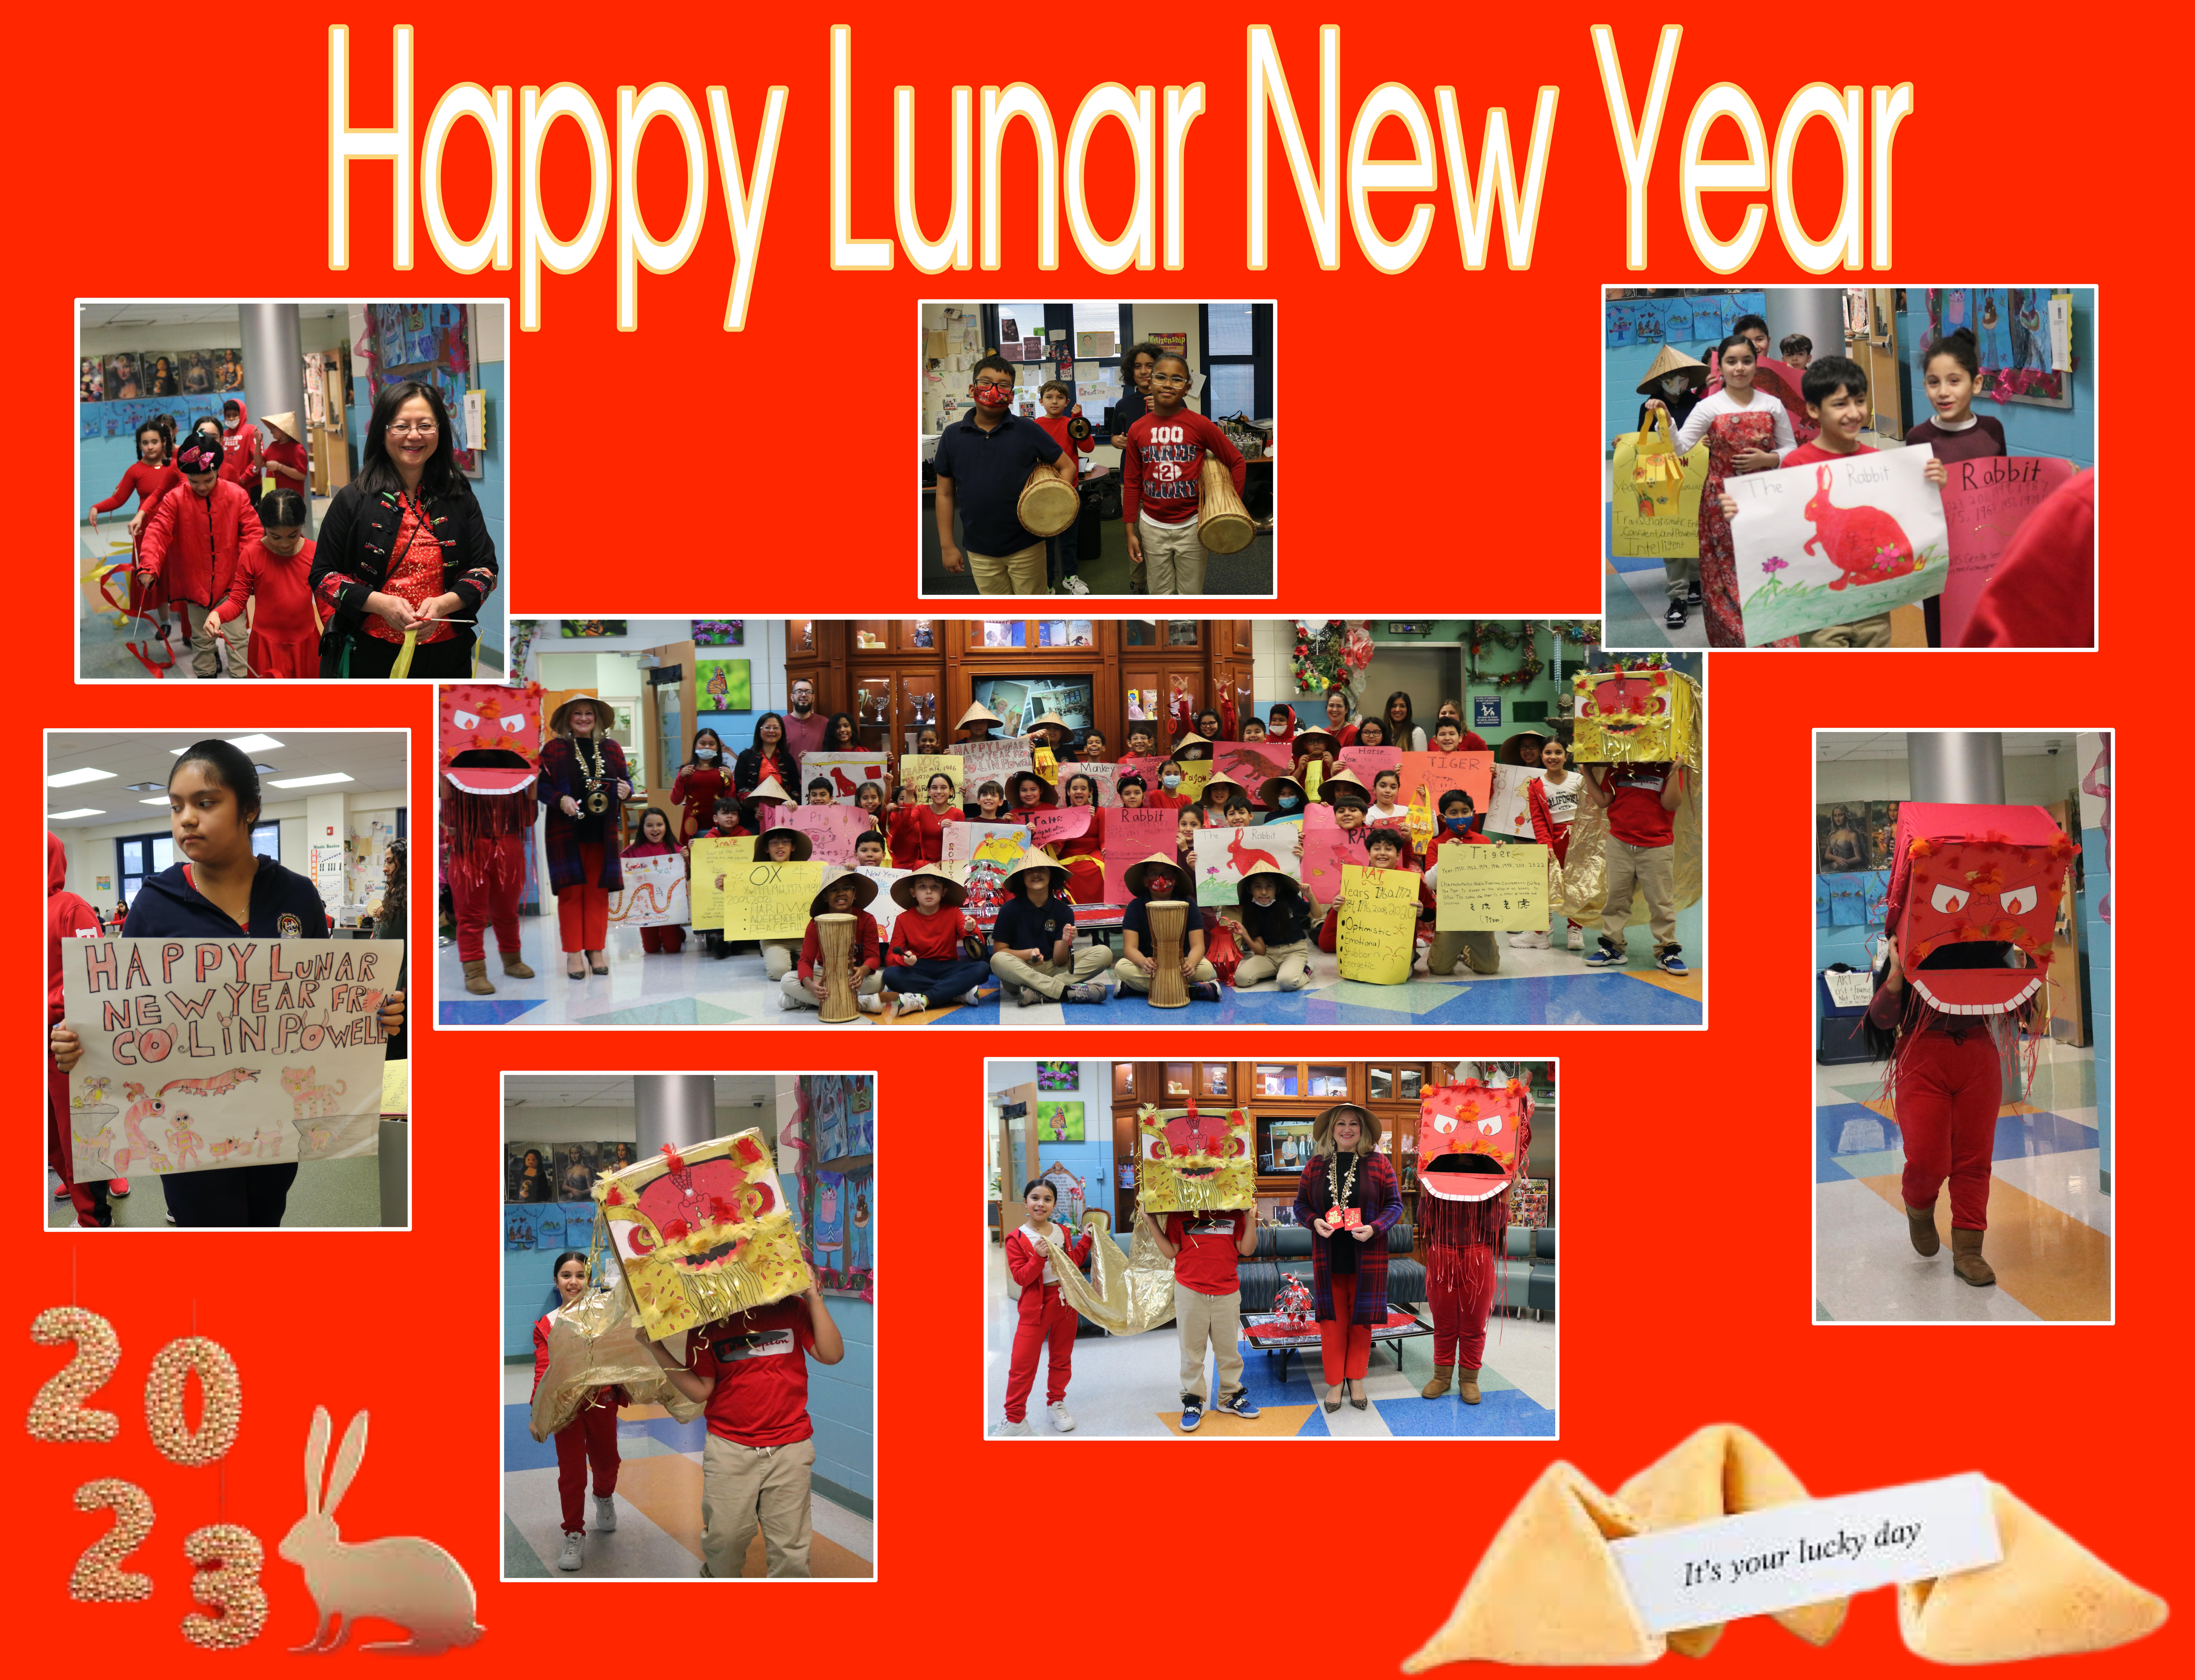 Colin Powell School Lunar New Year